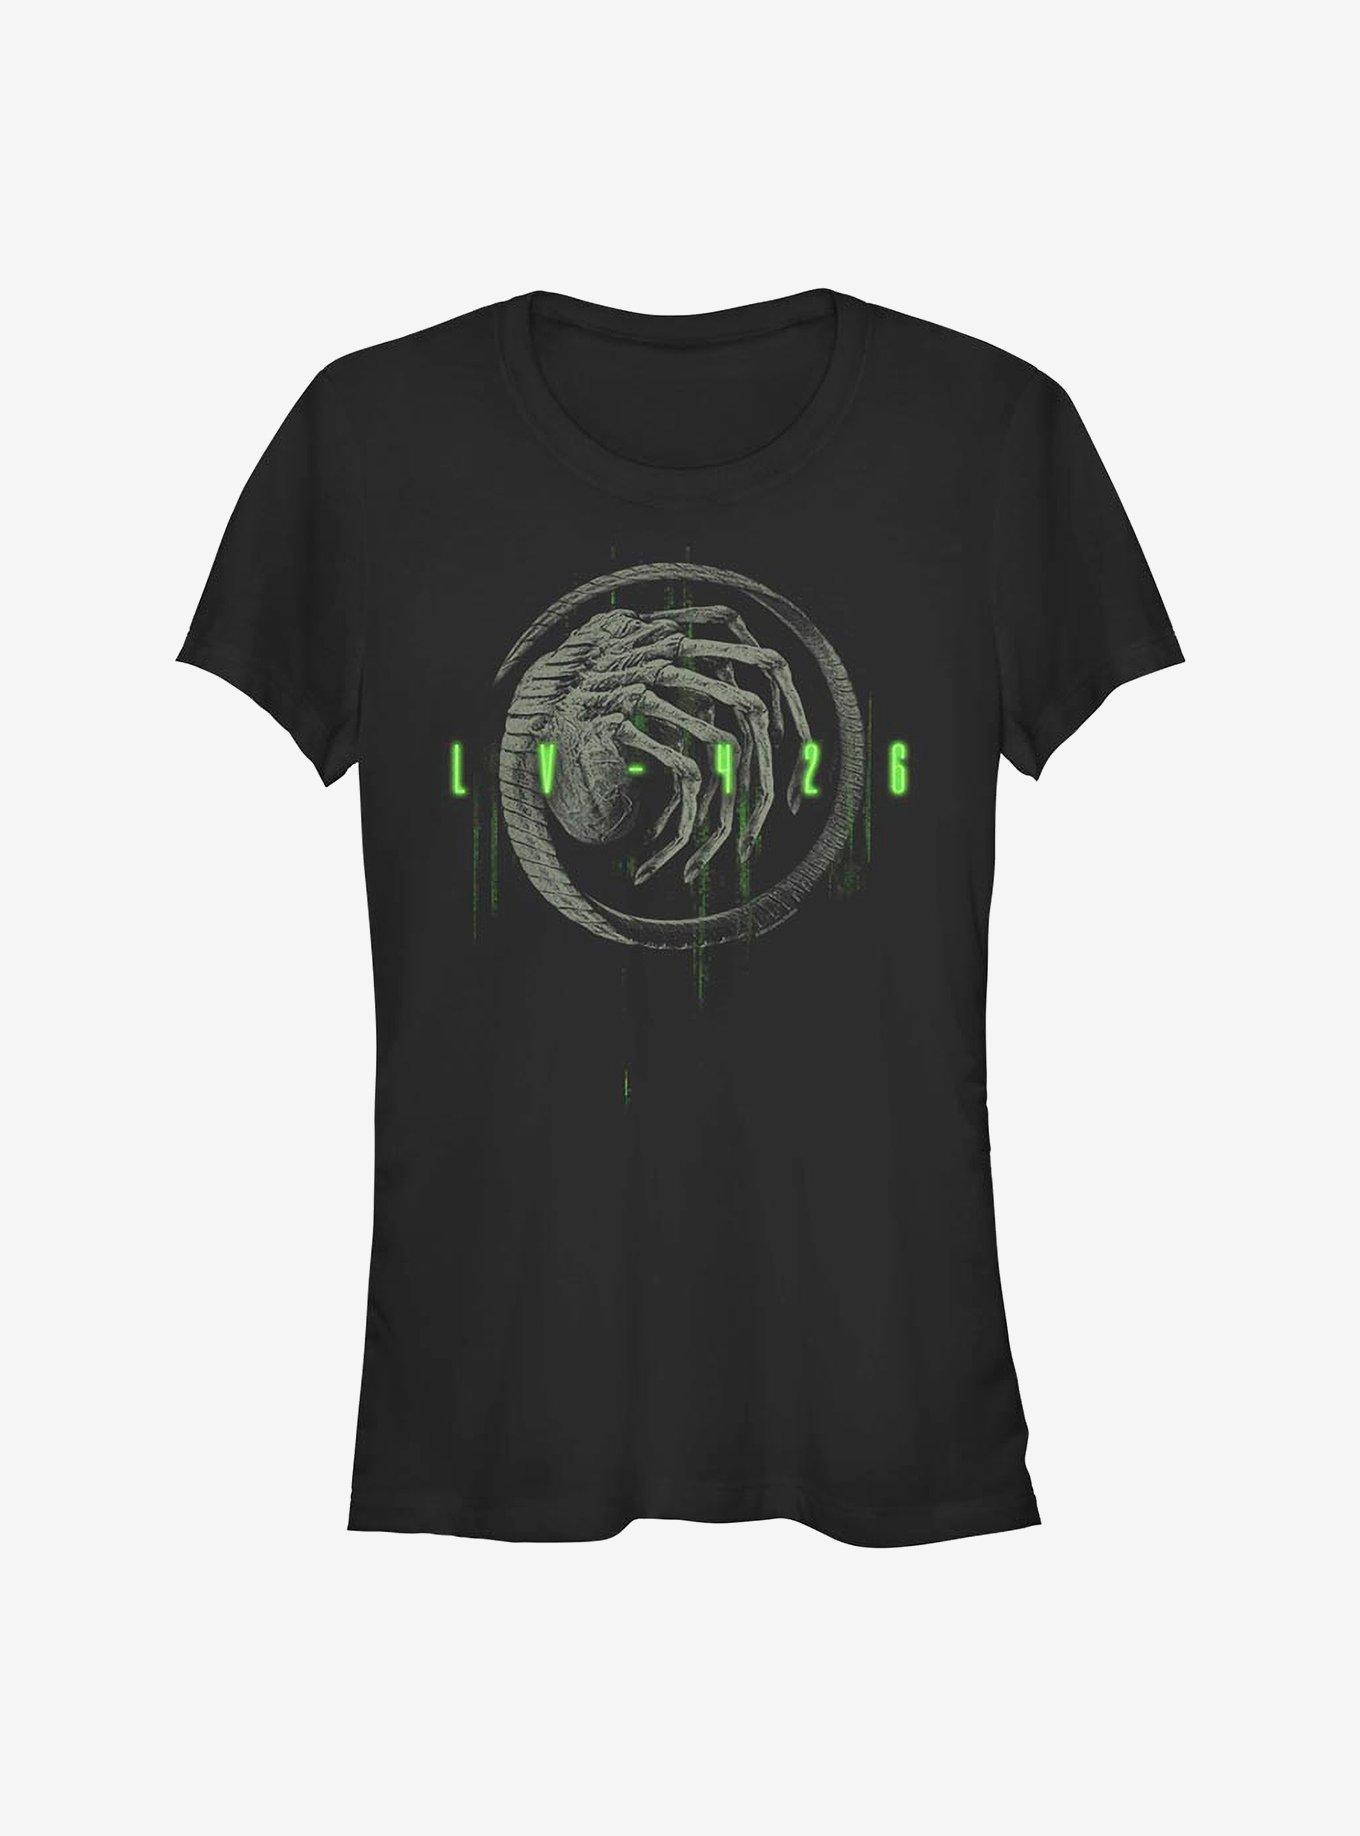 Alien day - Lv 426 Alien day' Women's T-Shirt